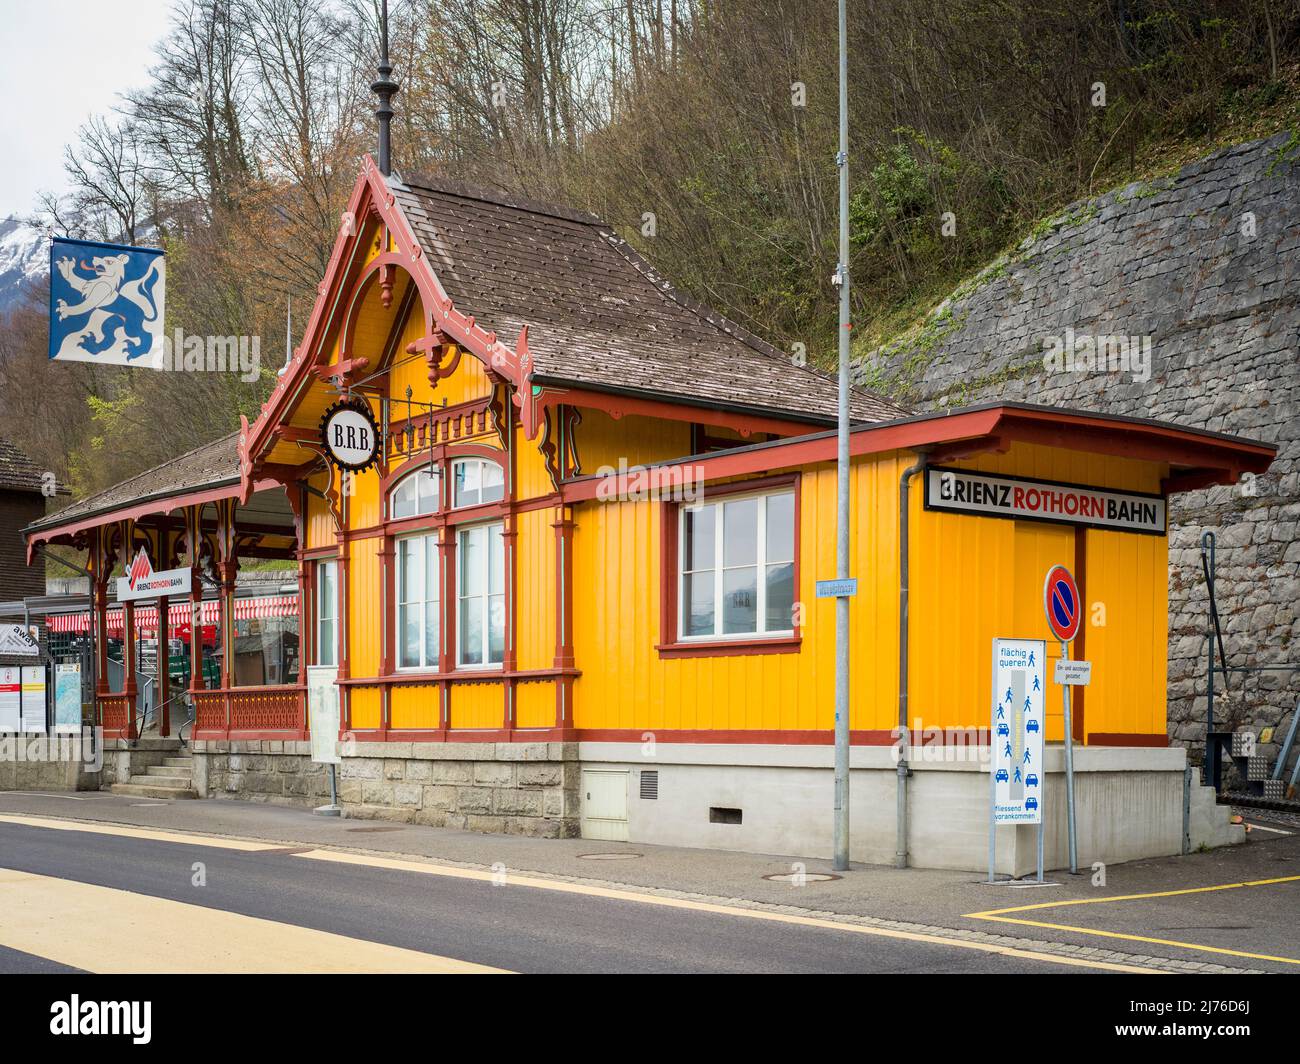 Brienzer Rothornbahn, valley station in Brienz Stock Photo